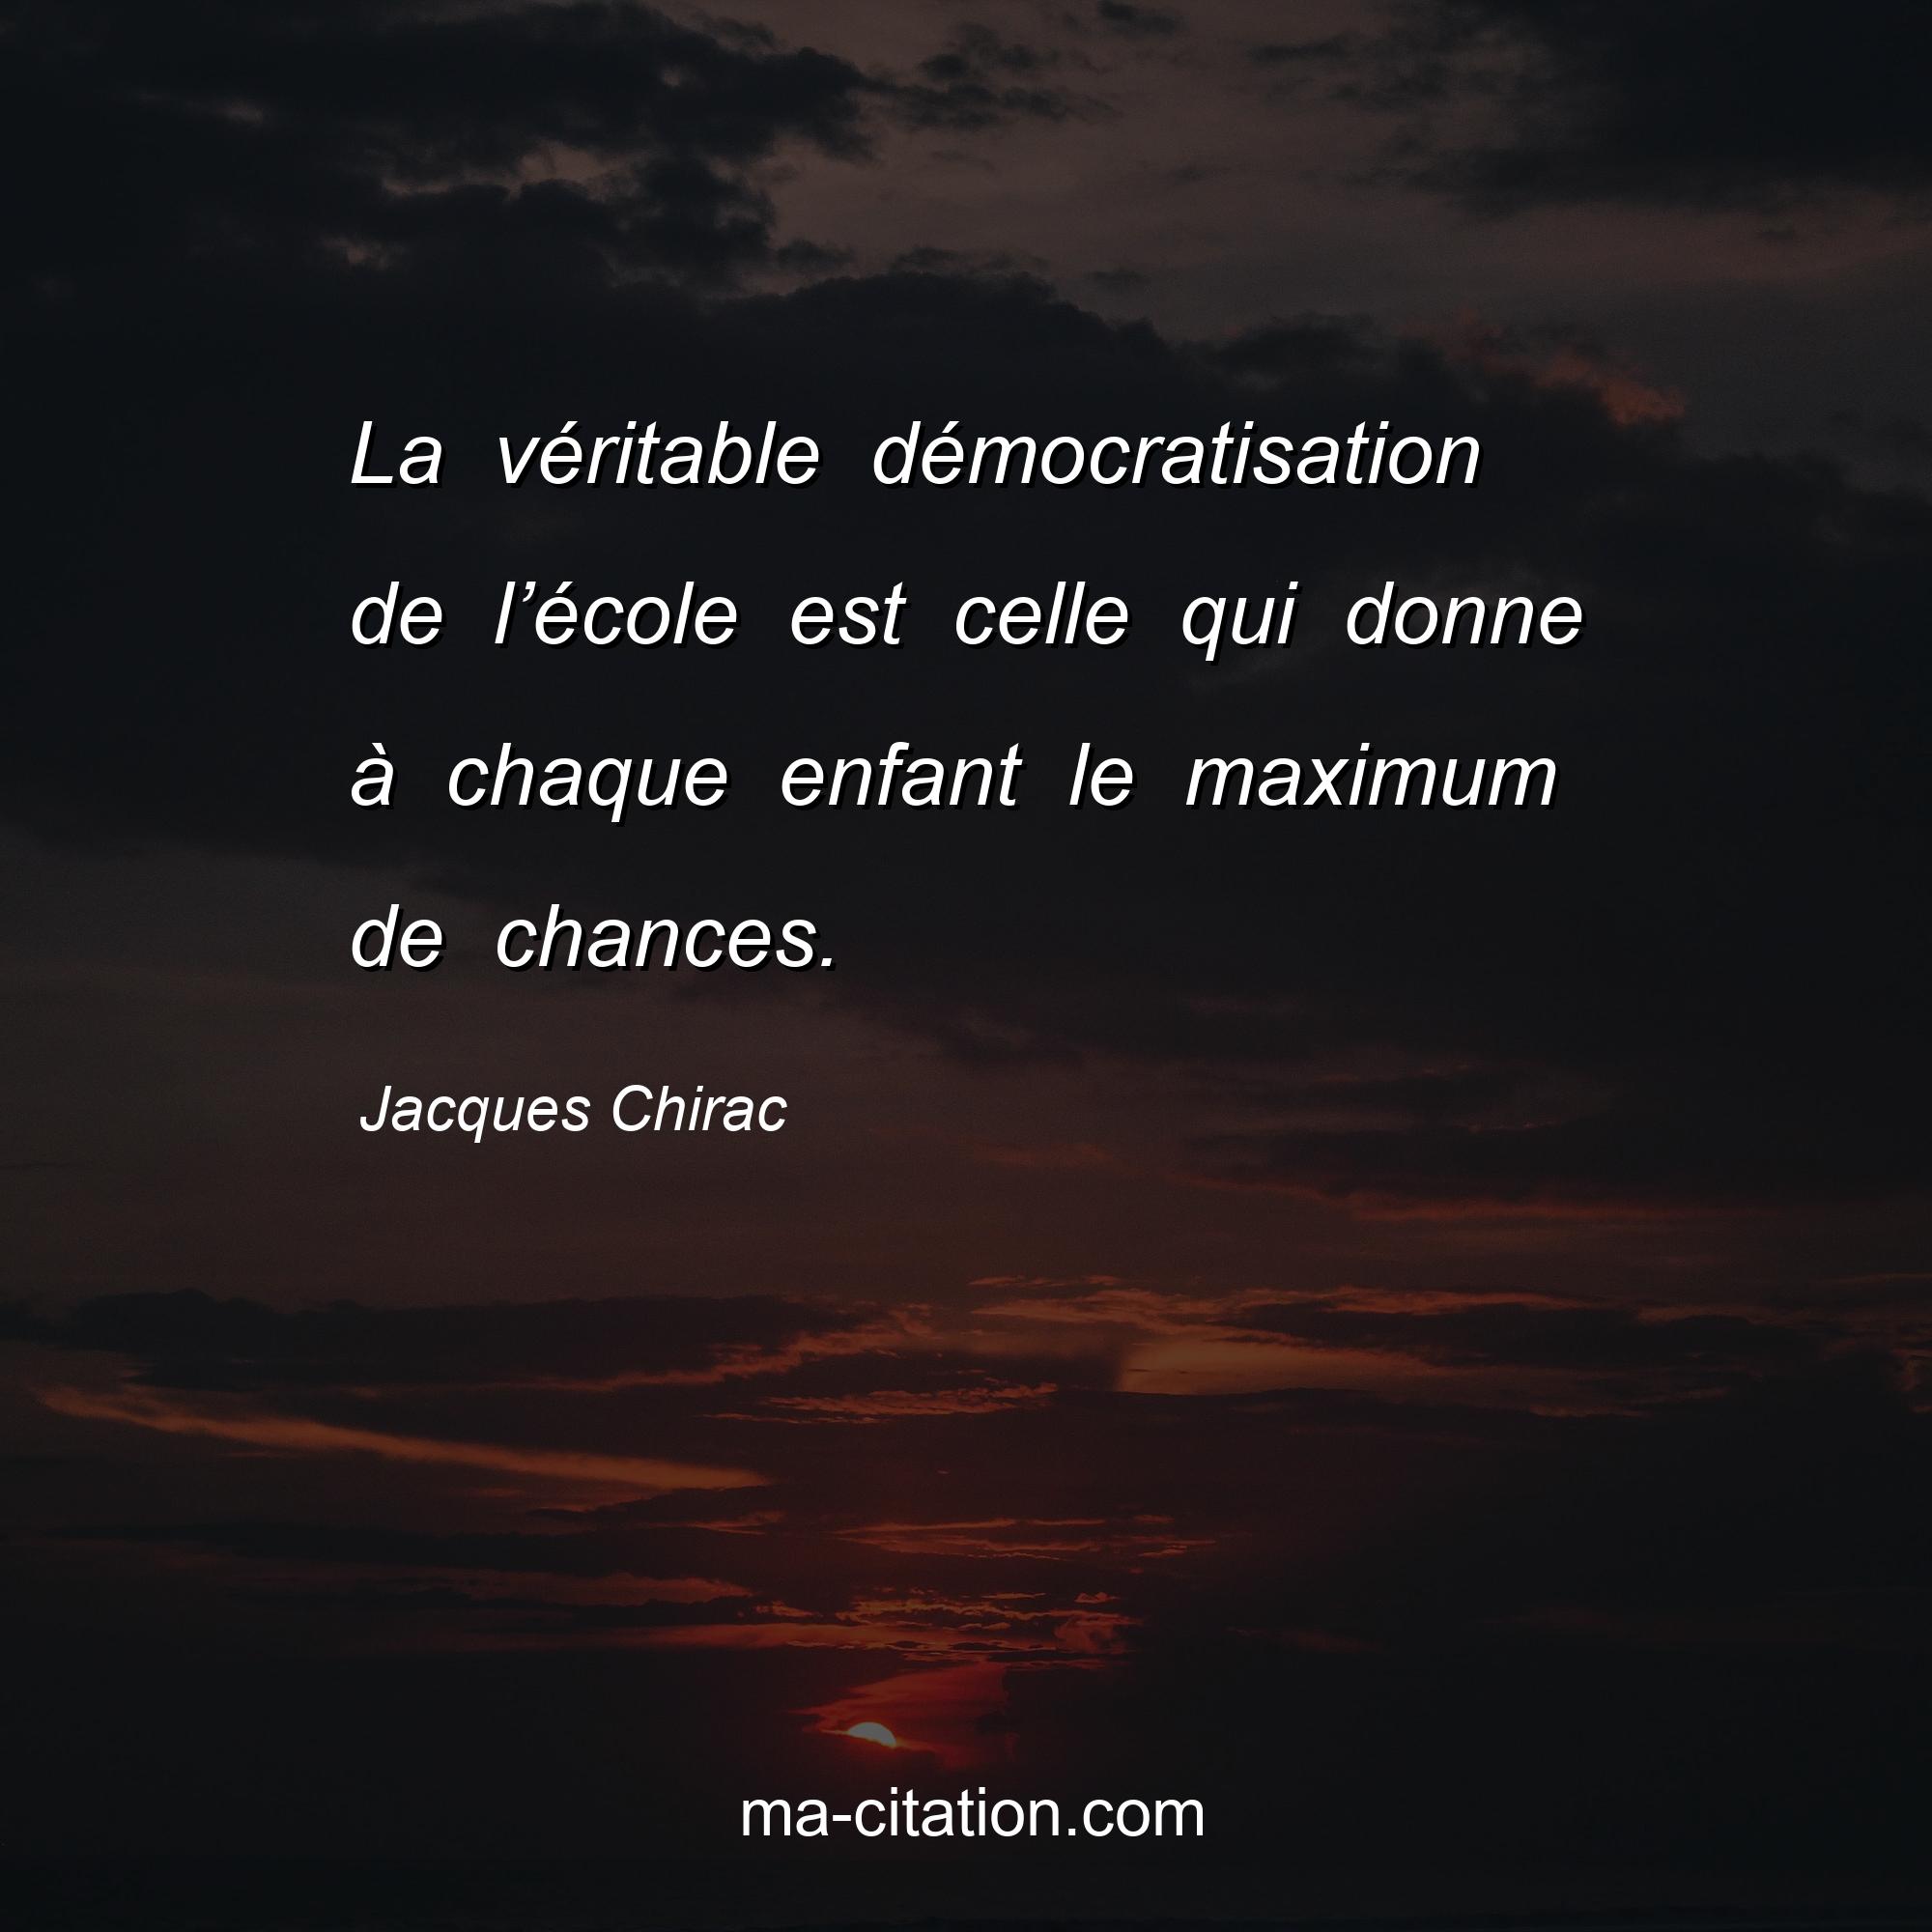 Jacques Chirac : La véritable démocratisation de l’école est celle qui donne à chaque enfant le maximum de chances.